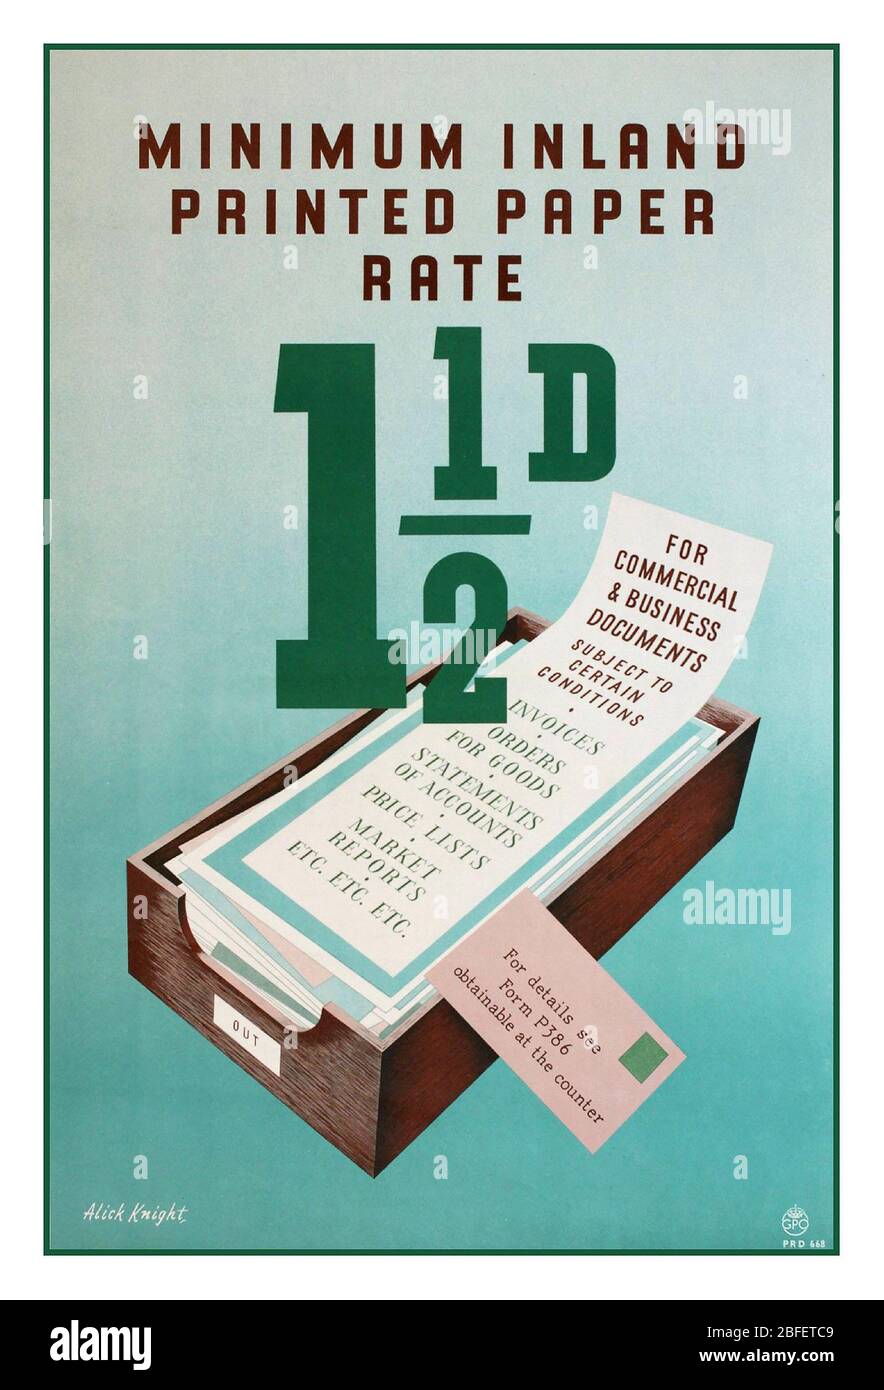 TARIFFE POSTALI UK Archivio vintage GPO Information Poster 1950 Post Postal Poster Inland carta stampata tariffa 1 1/2 d per documenti commerciali e commerciali Foto Stock